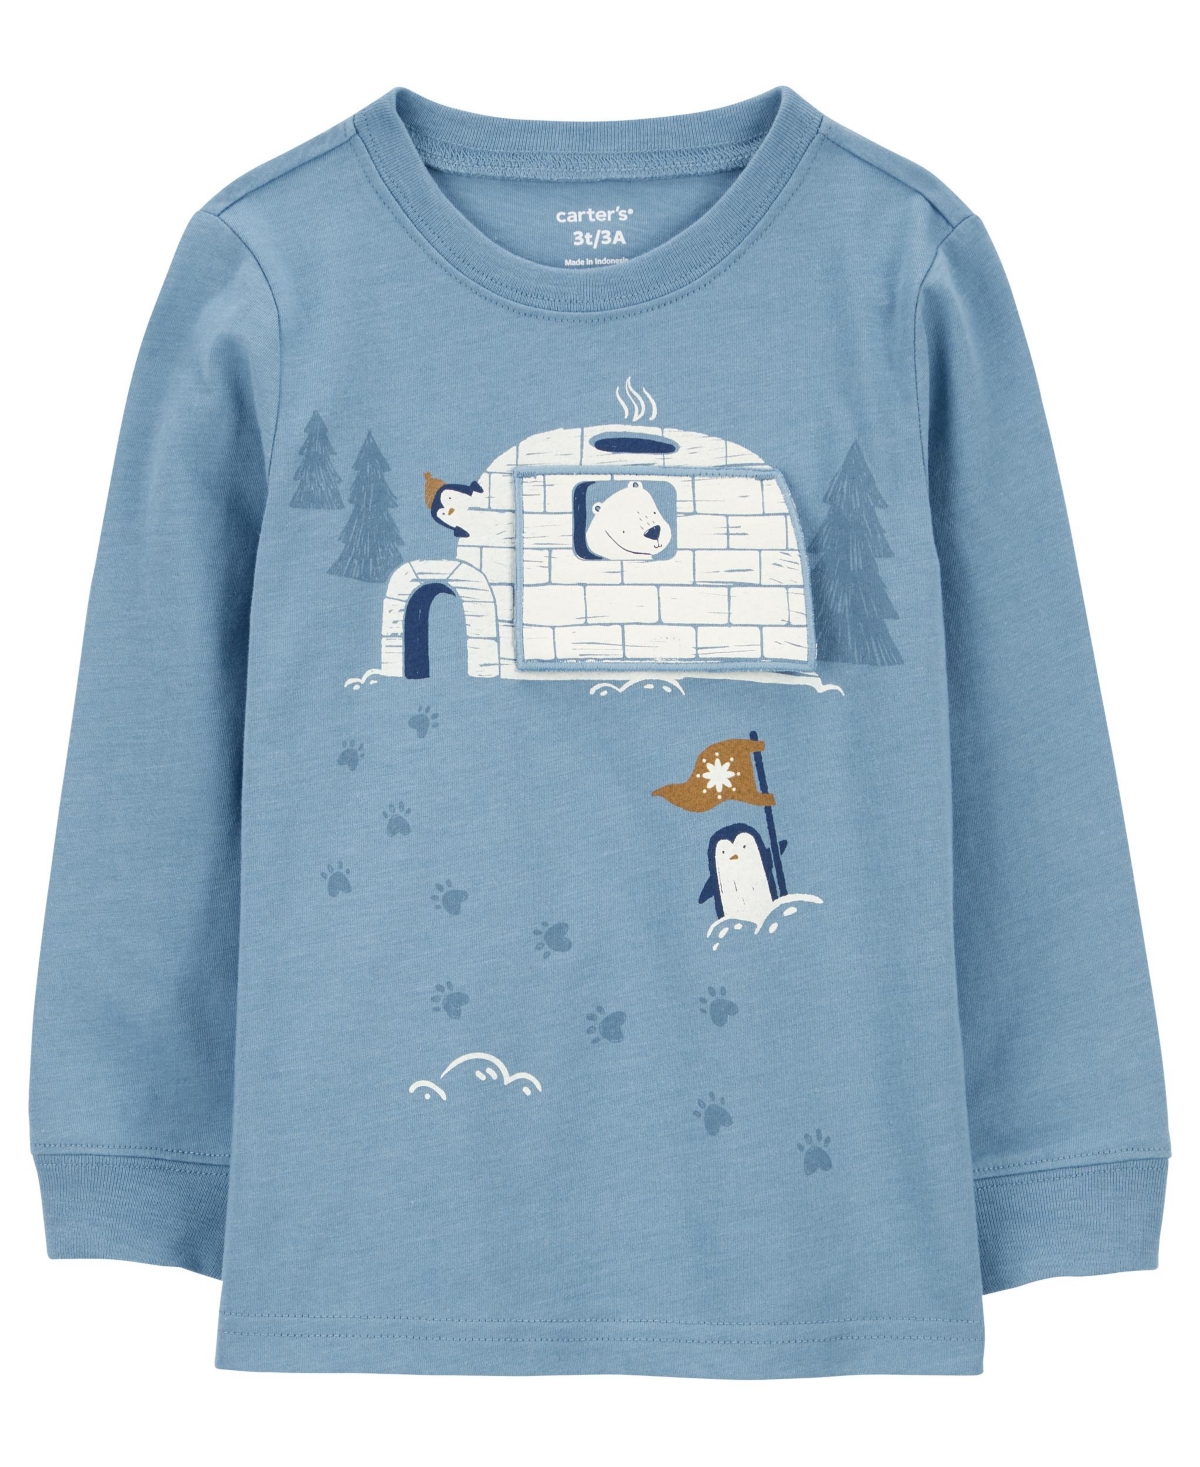 Carter's Babies' Toddler Boys Polar Bear Igloo Jersey T-shirt In Blue